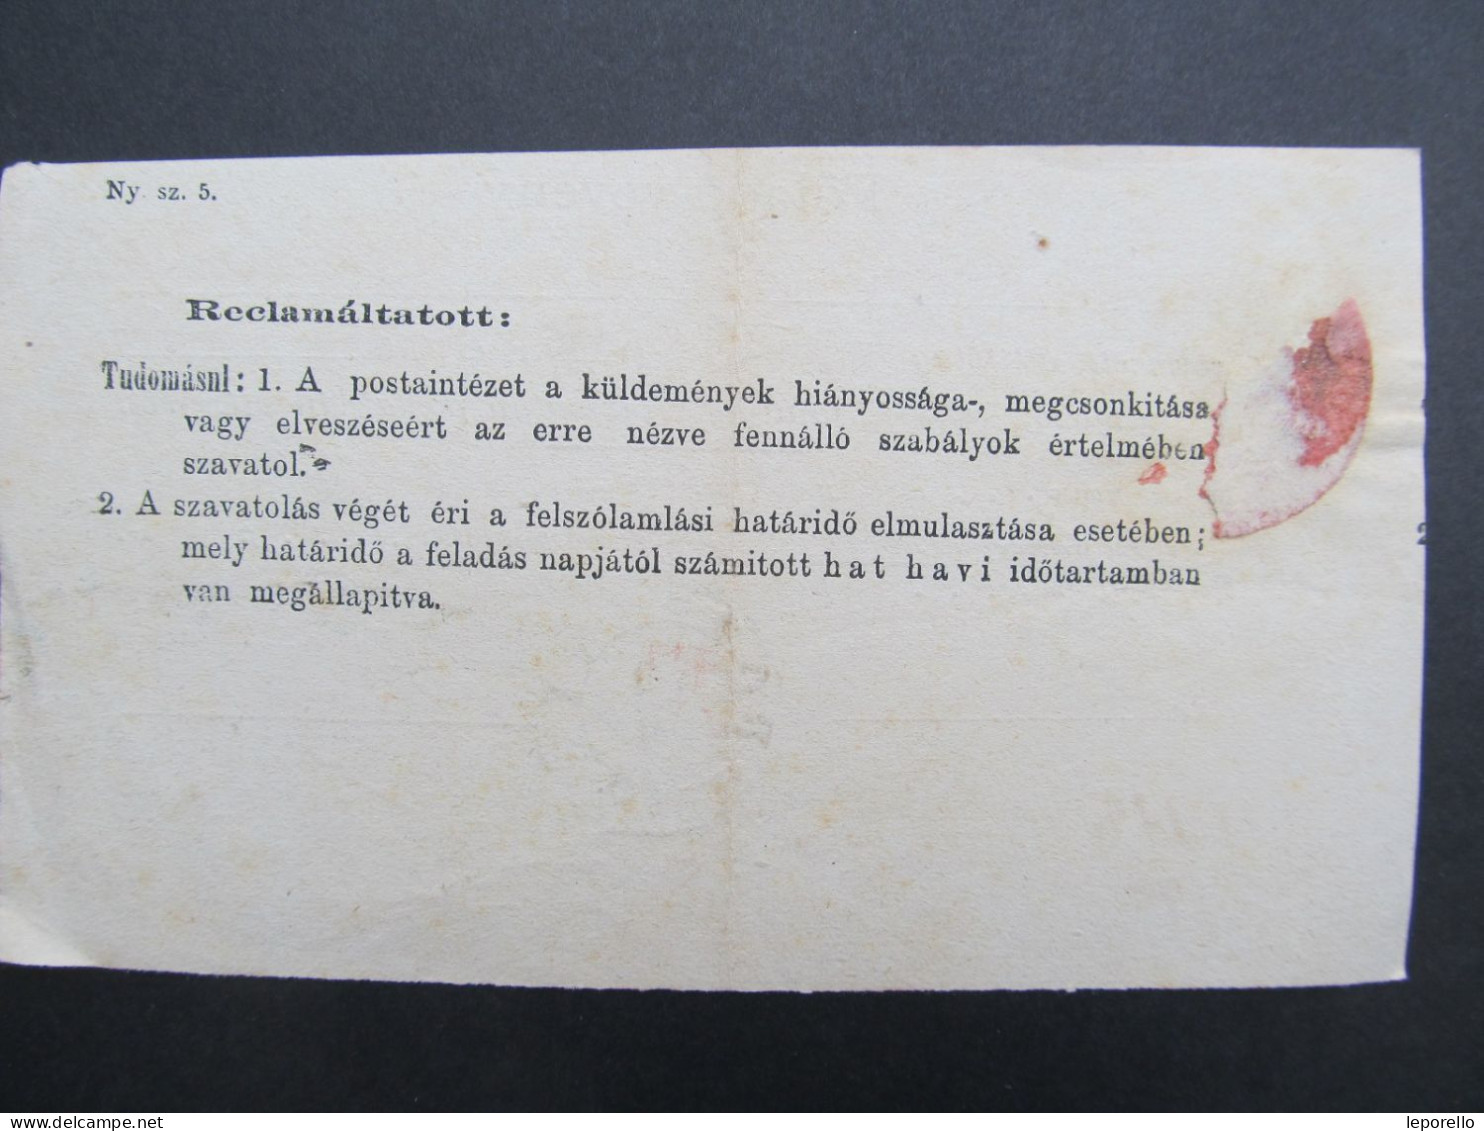 Föladó Vevény Pozsony Bratislava Slovakia 1874 /// P5154 - Brieven En Documenten